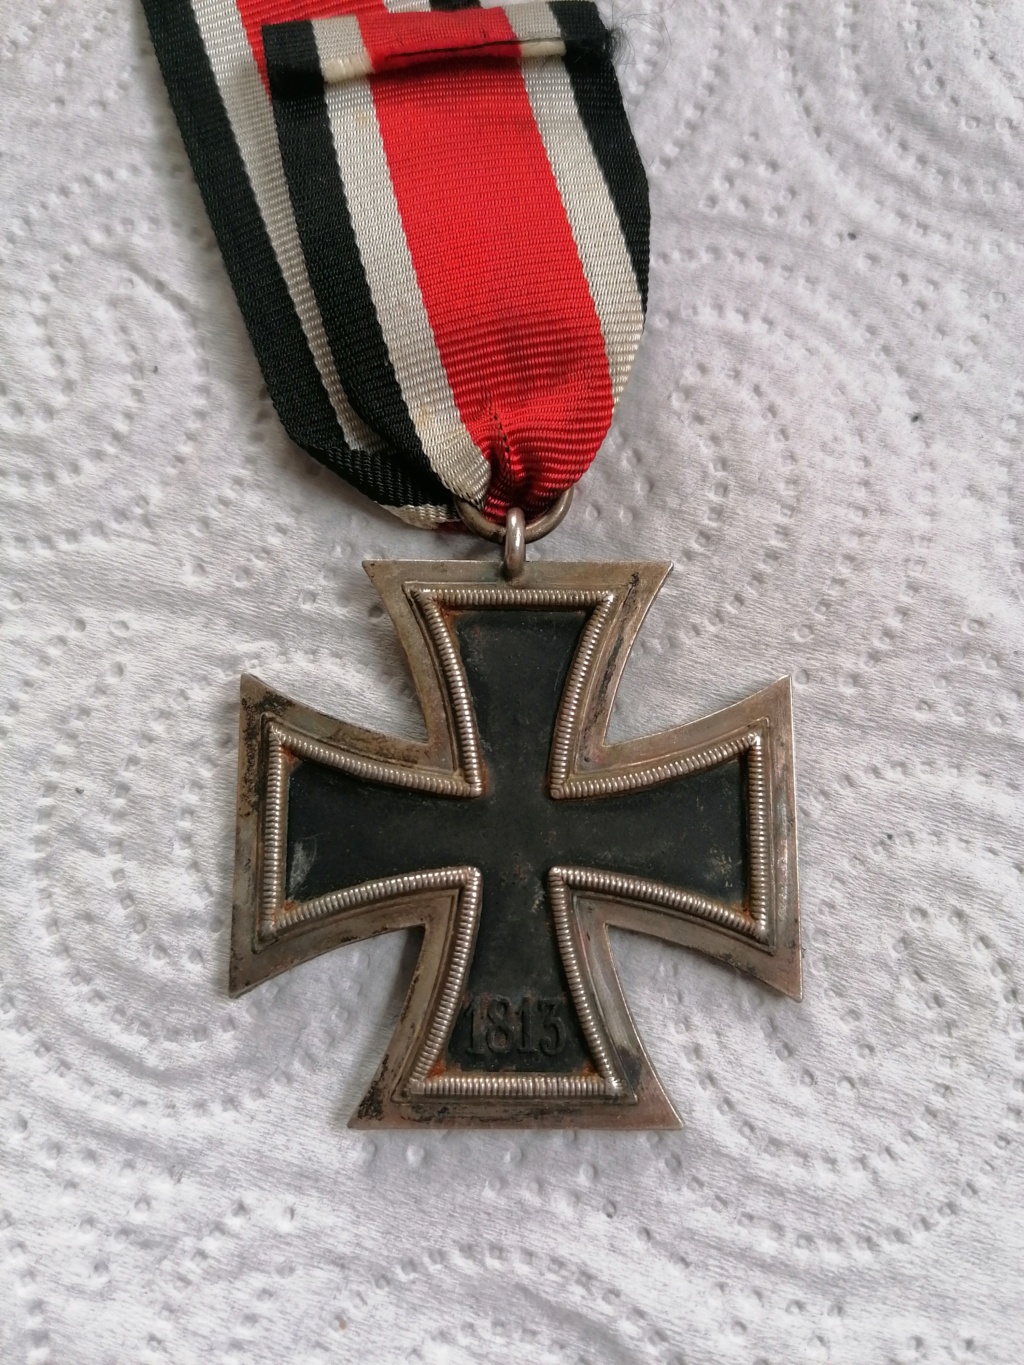 Croix de fer 2 classe ww2  Img_1091